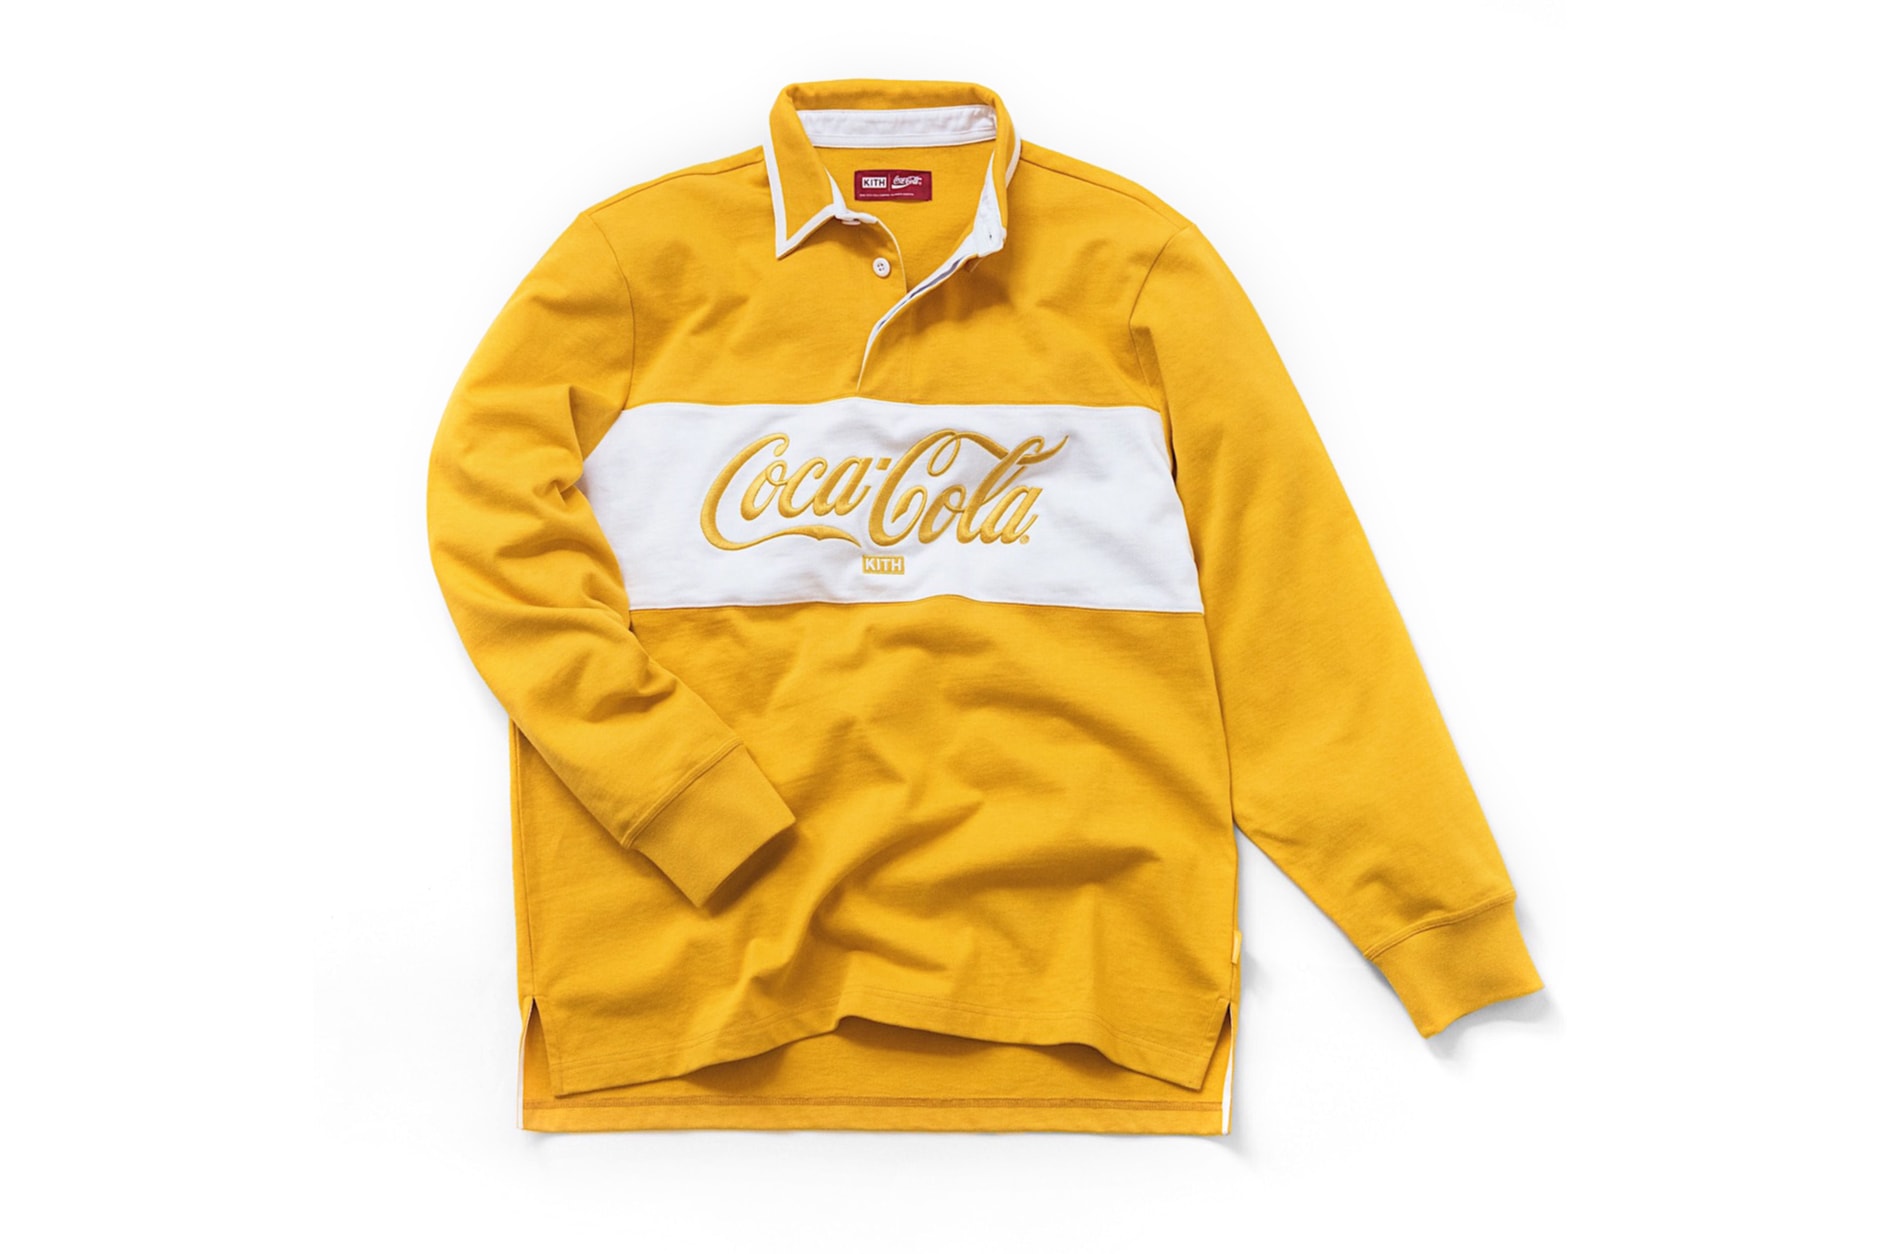 Coca Cola x KITH が2018年夏に再びコラボカプセルをリリース 〈Converse〉のChuck Taylorやスタジアムジャケットなど、ヴィンテージフリークも唸る構成に この夏、「Coca-Cola（コカ・コーラ）」と『KITH（キス）』が再開を果たし、新たなカプセルコレクションをリリースする。『KITH』の創設者であるRonnie Fieg（ロニー・ファイグ）が数日前からSNSでティーザー画像を投稿してきたことで、すでにこの動きを察知していた人も多いだろうが、今回のコラボレーションでは〈Converse（コンバース）〉のChuck Taylorに加え、スタジアムジャケットやラグビーシャツなど、ヴィンテージフリークたちの購買意欲を駆り立てるアイテムが多数ラインアップ。また、350ml缶のコーラも通常のフレーバーとチェリーコークの2種類が用意されるなど、アパレル以外の構成も気になるところだ。  発売日に関する詳細は『KITH』の正式発表を待つ必要があるが、リリースはそう遠くないはず。ひとまず、フォトギャラリーと以下のInstagramをチェックして、その概要を確認しておこう。  藤原ヒロシが仕掛ける『THE CONVENI（ザ・コンビニ）』のオリジナルアイテムや、〈Palace（パレス）〉の2018年秋コレクションのプロダクト一覧など、その他の最旬ファッションニュースもお見逃しなく。